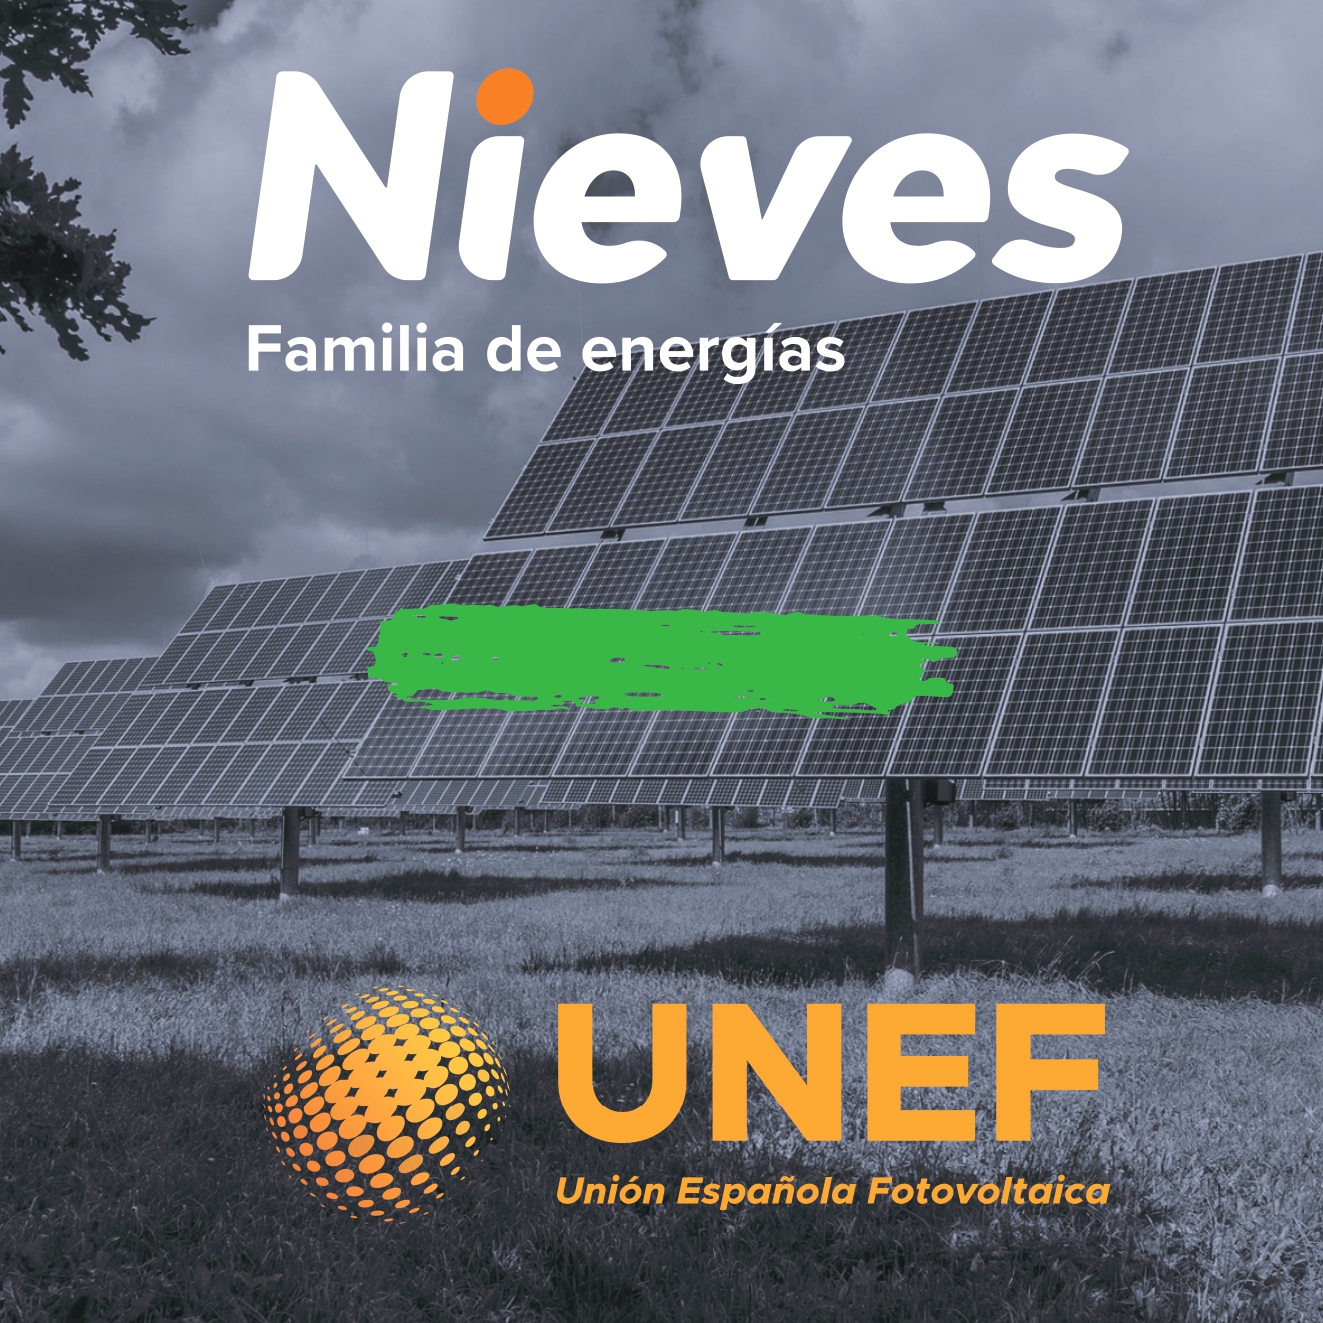 Nieves Energía se une a la Unión Española Fotovoltaica